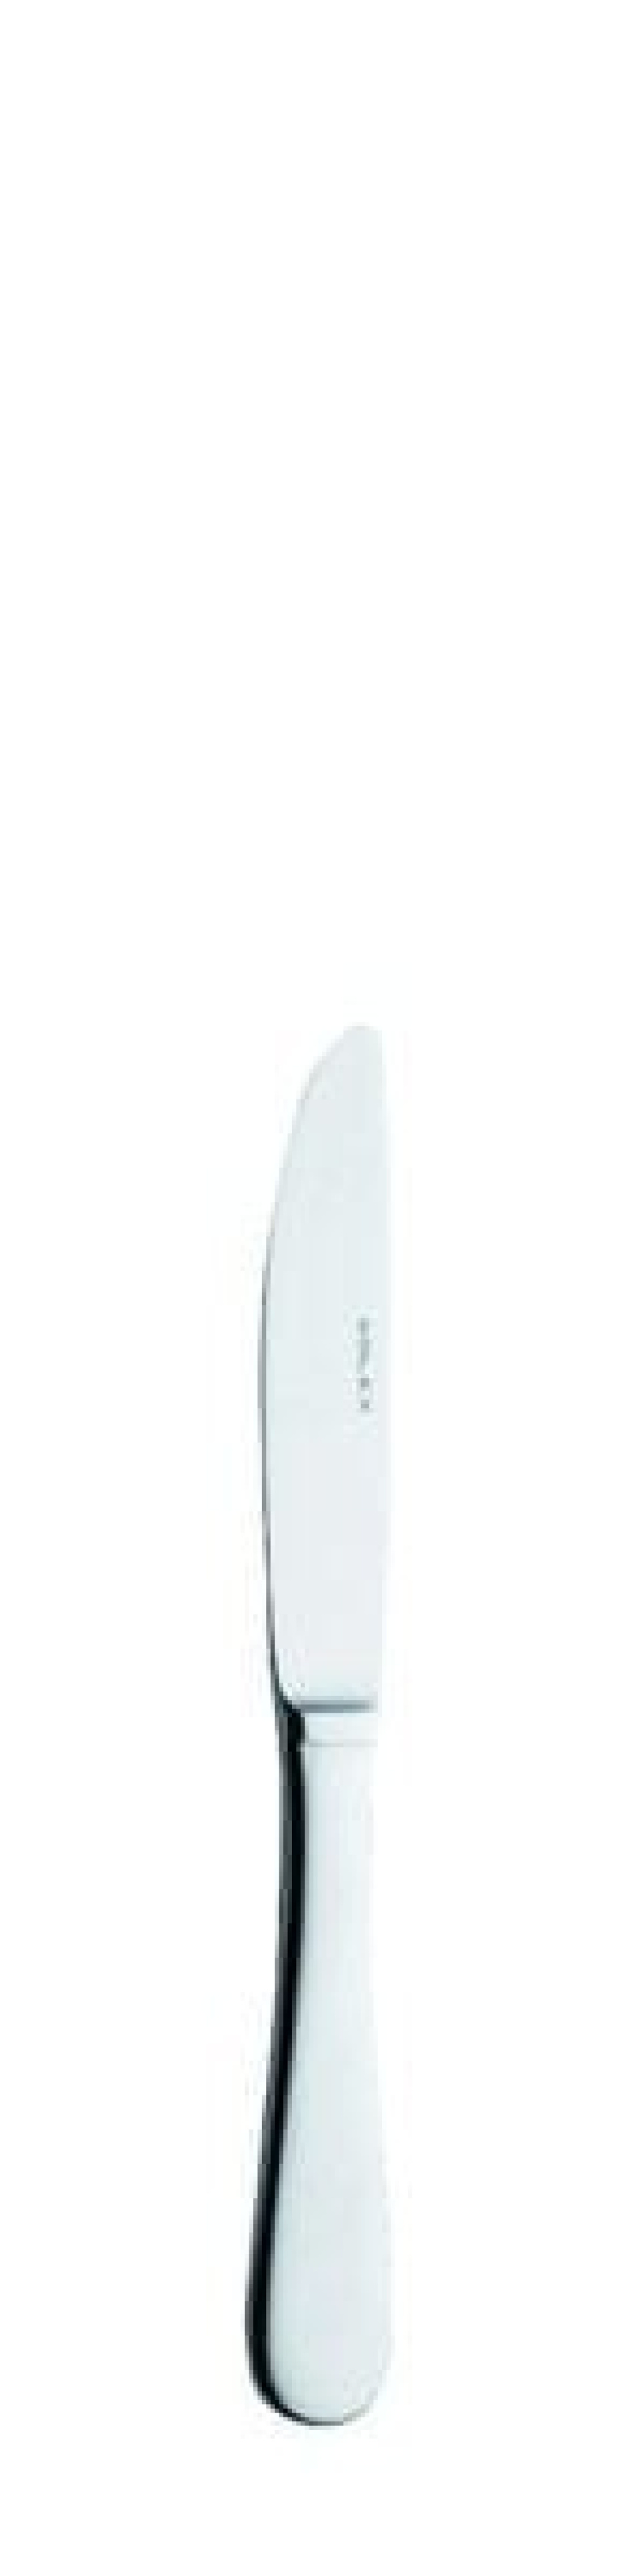 Baguette smør kniv 175 mm - Solex i gruppen Borddækning / Bestik / Smør knive hos The Kitchen Lab (1284-14150)